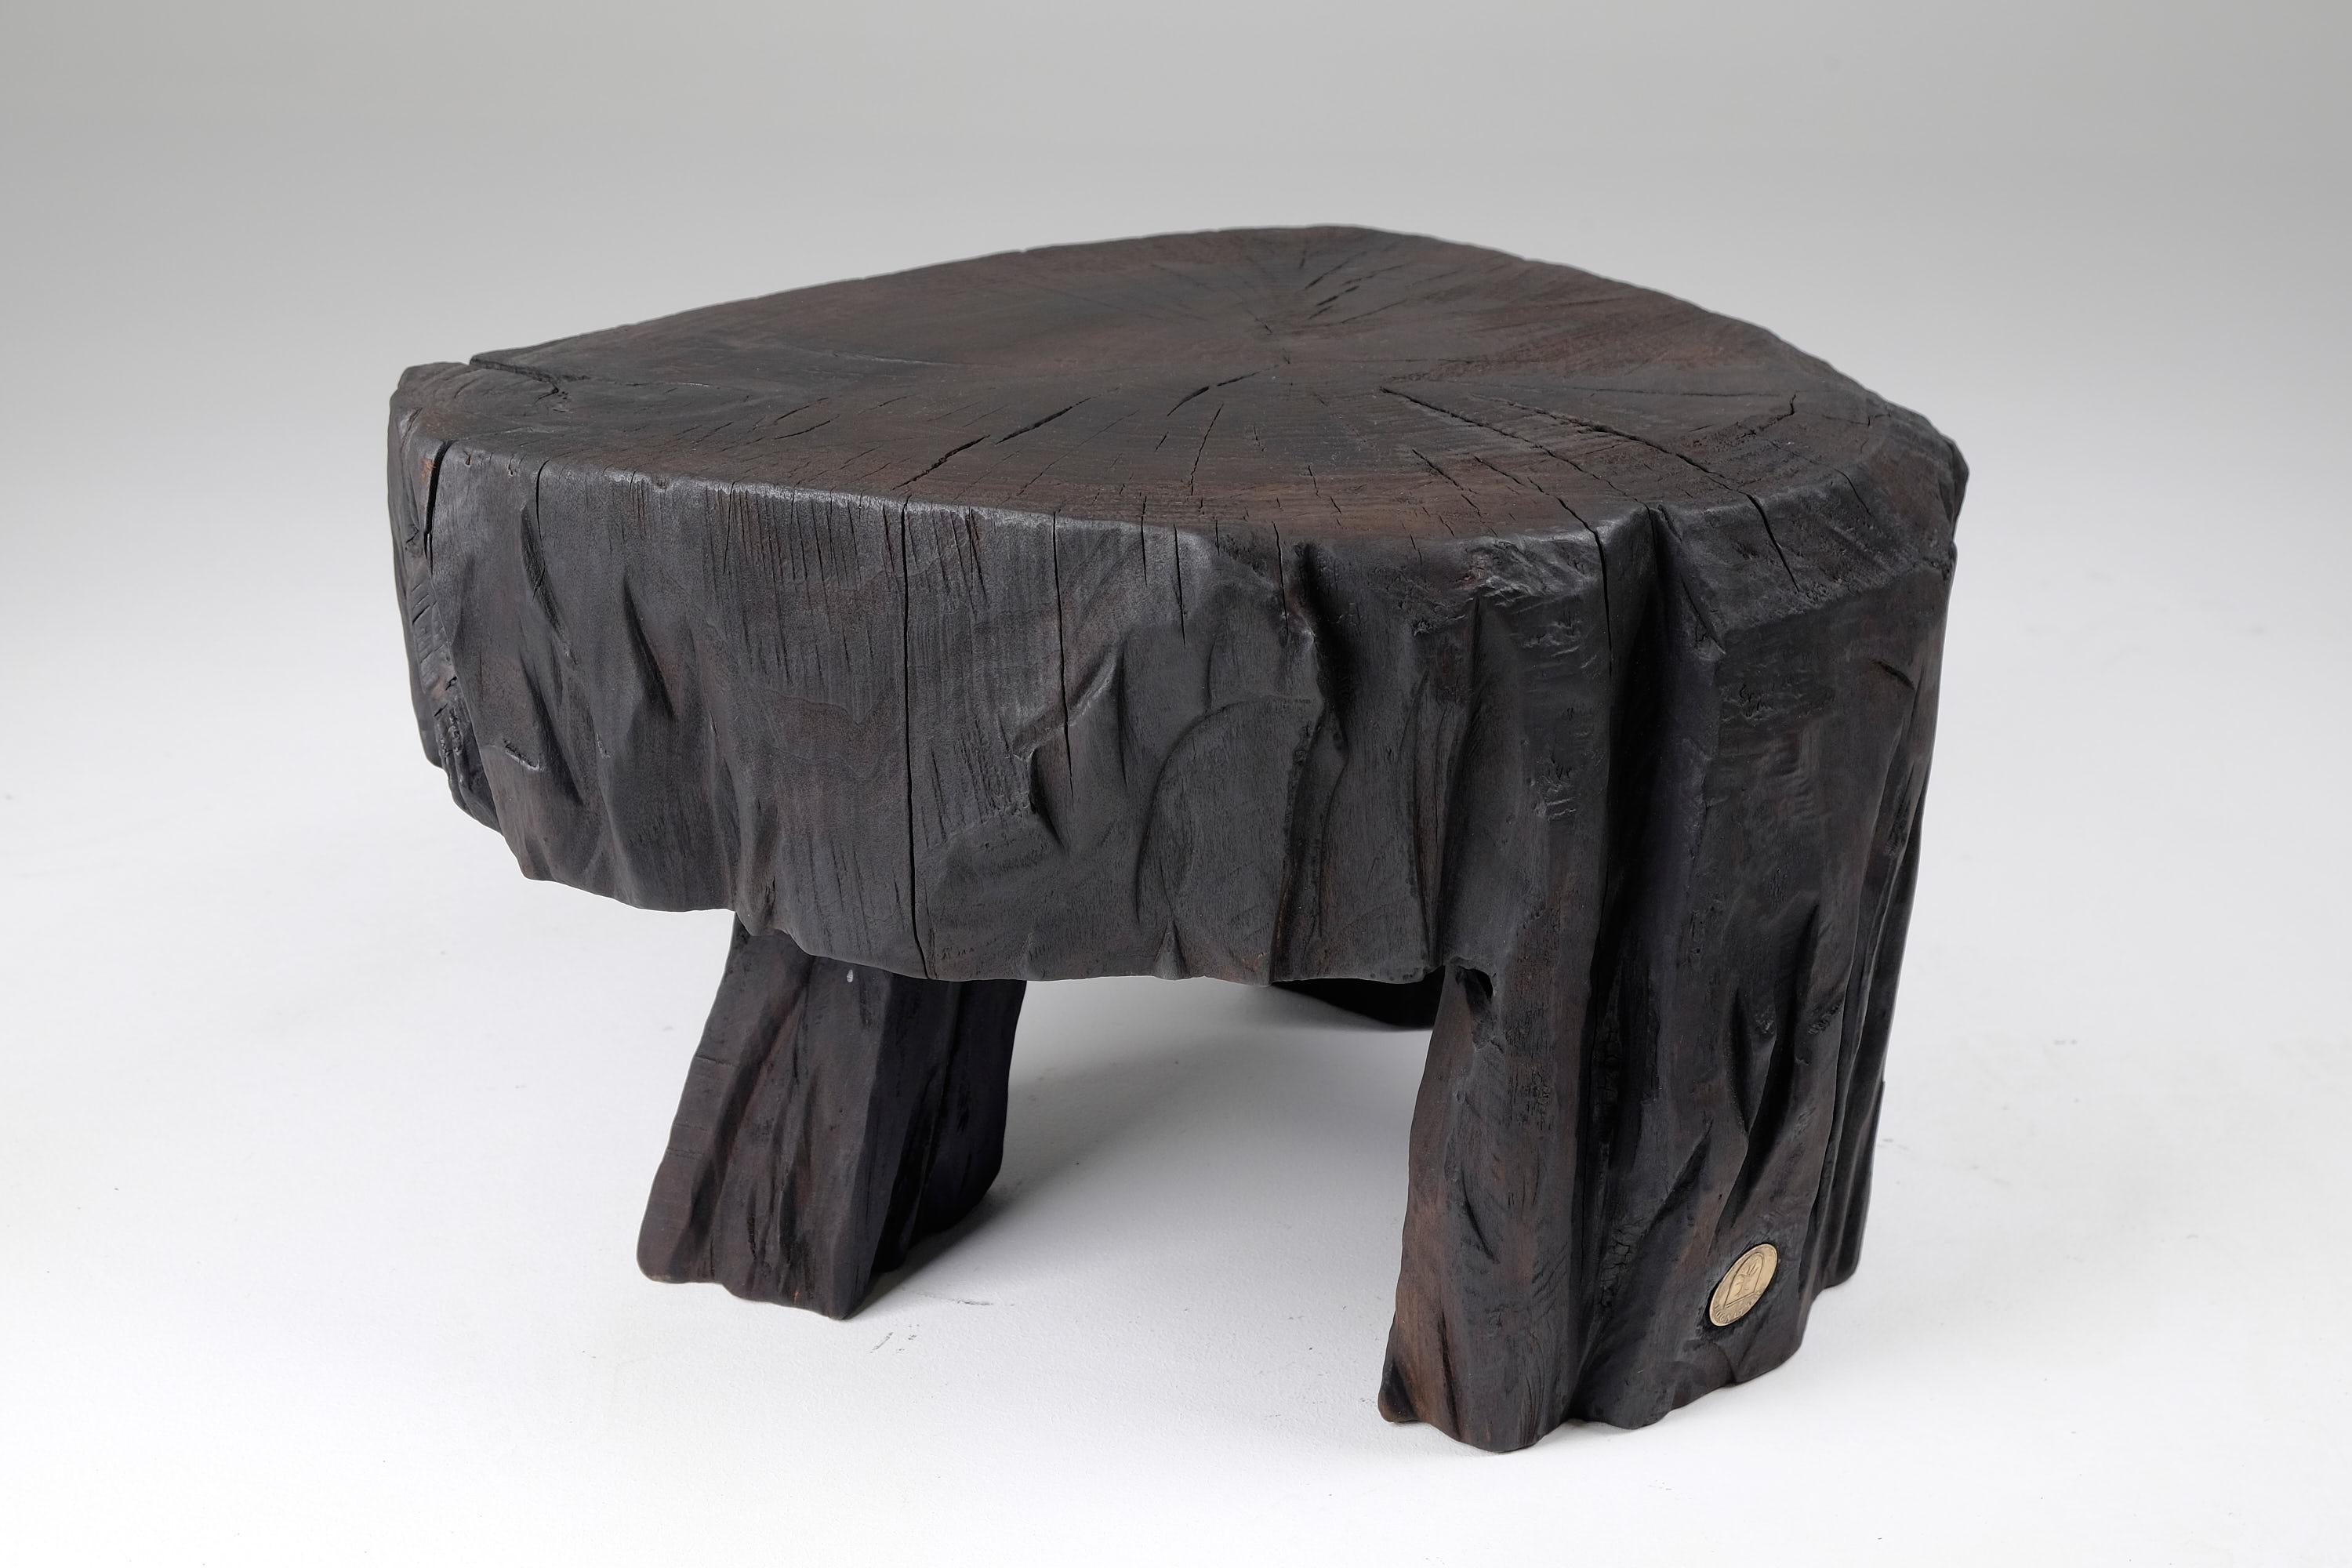 Tabouret/table d'appoint sculpté à la tronçonneuse. Sculpté dans une seule pièce de bois brûlé et protégé par des huiles de la plus haute qualité, il est durable pour des générations. Un tel design unique fait à la main mettra en valeur votre